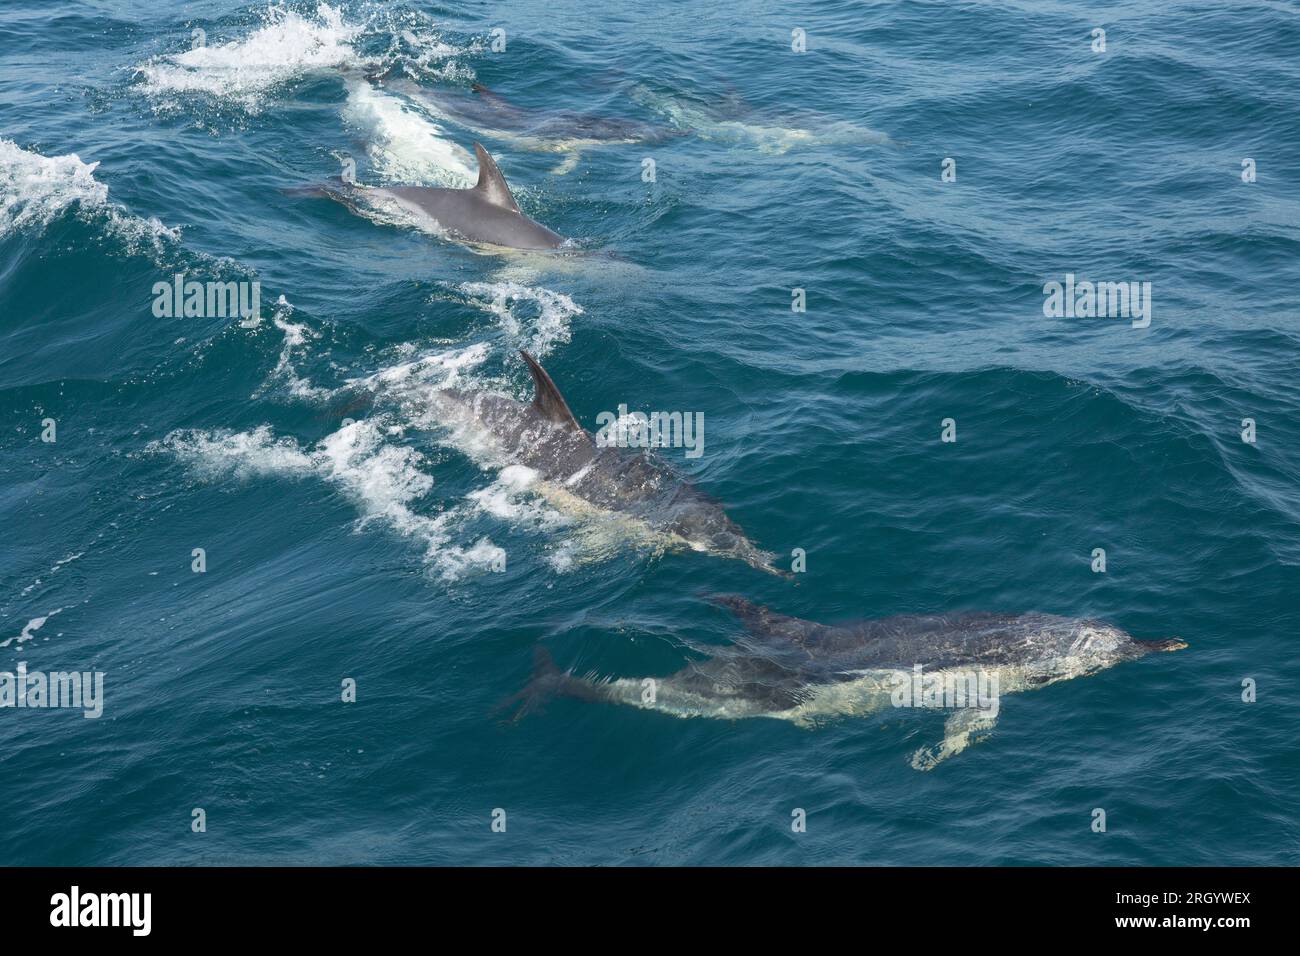 Gewöhnliche Kurzschnabeldelfine, Delphinus delphis, in der Lyme Bay, die sich in Werbe- und Paarungsverhalten befanden. Lyme Bay Dorset England GB Stockfoto